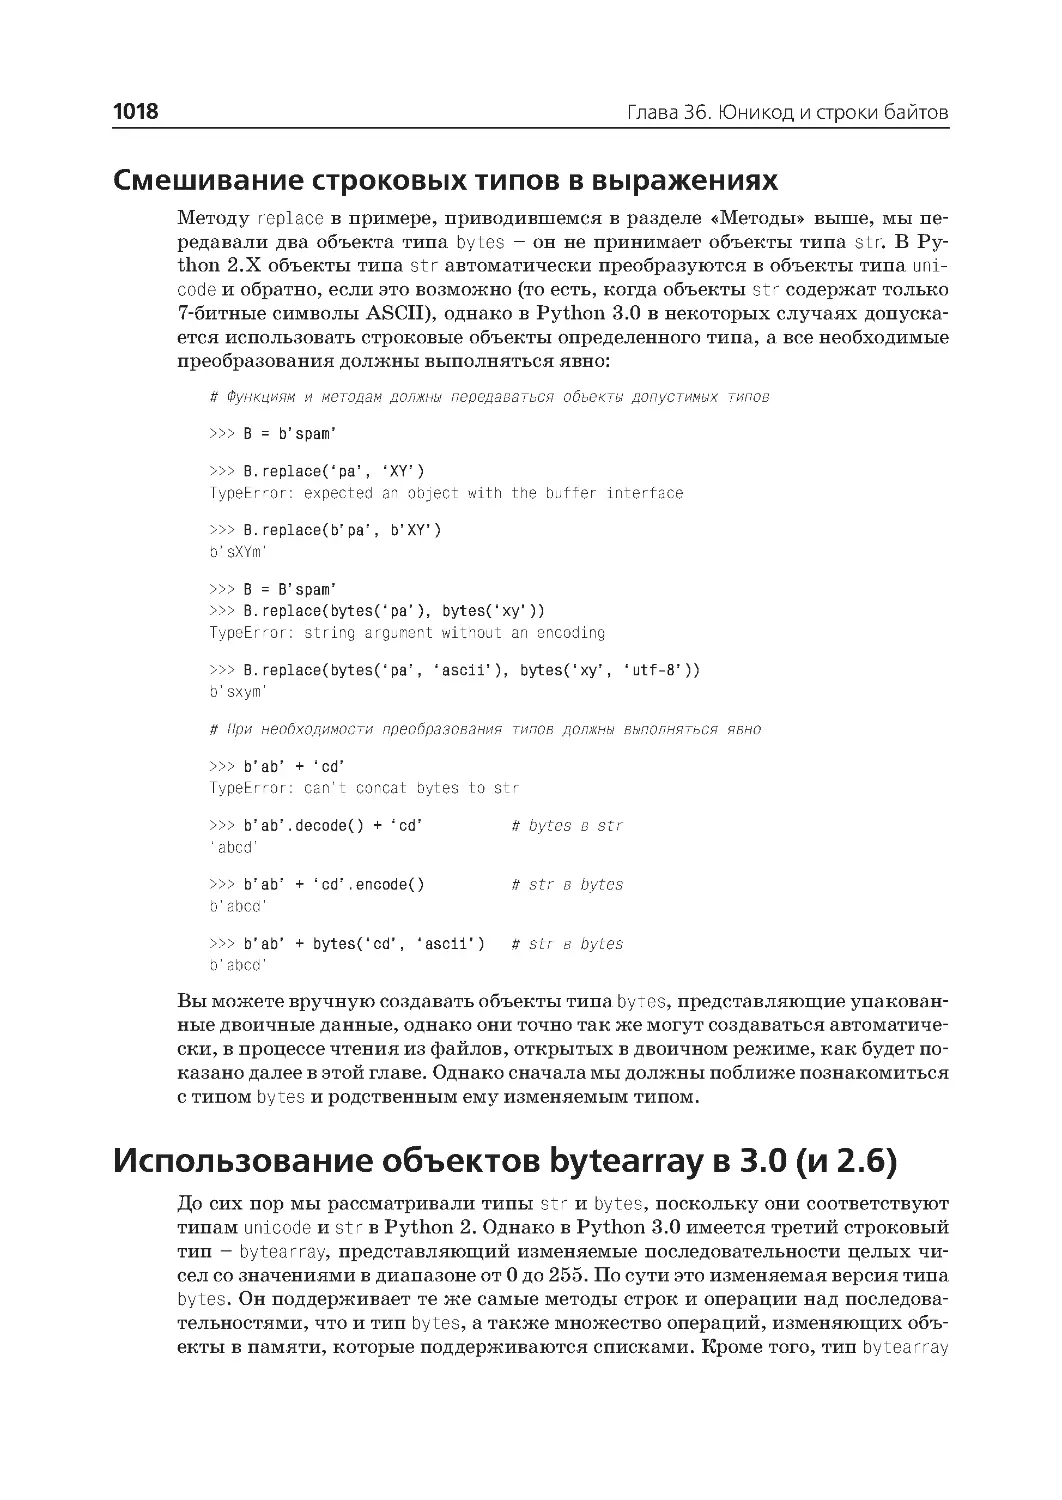 Использование объектов bytearray в 3.0 (и 2.6)